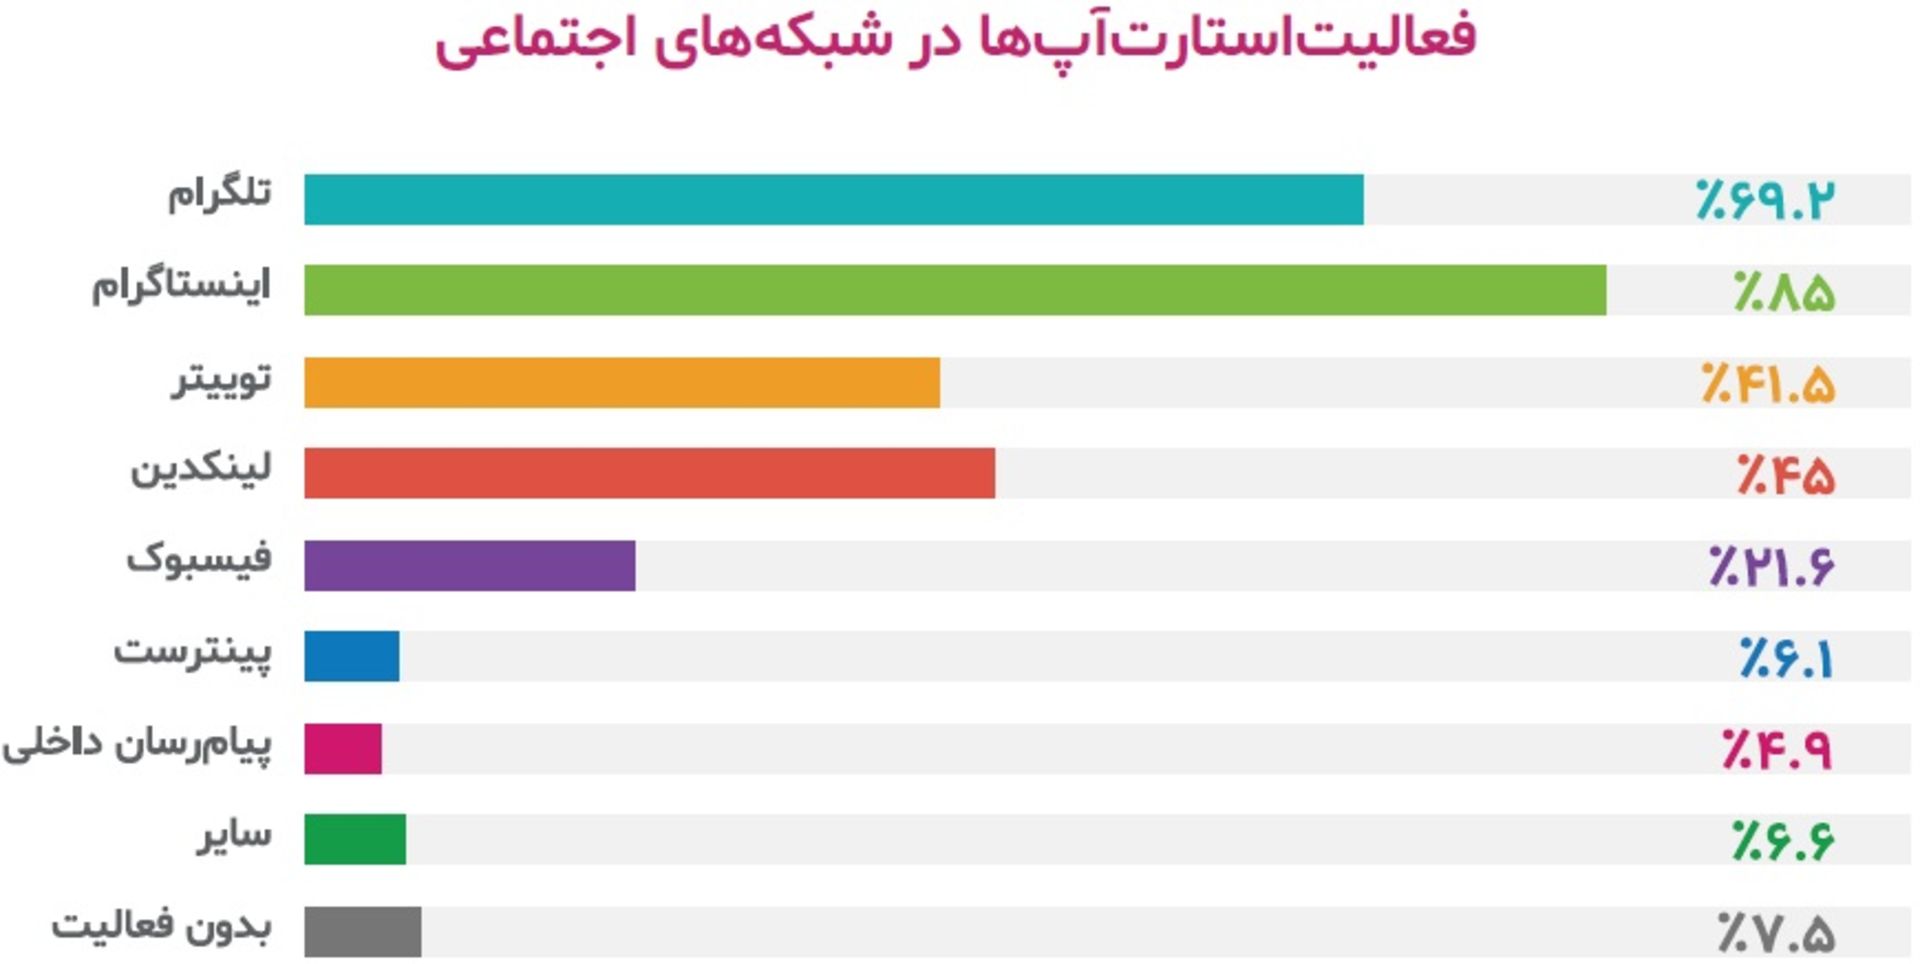 فعالیت استارتاپ های ایرانی در شبکه های اجتماعی